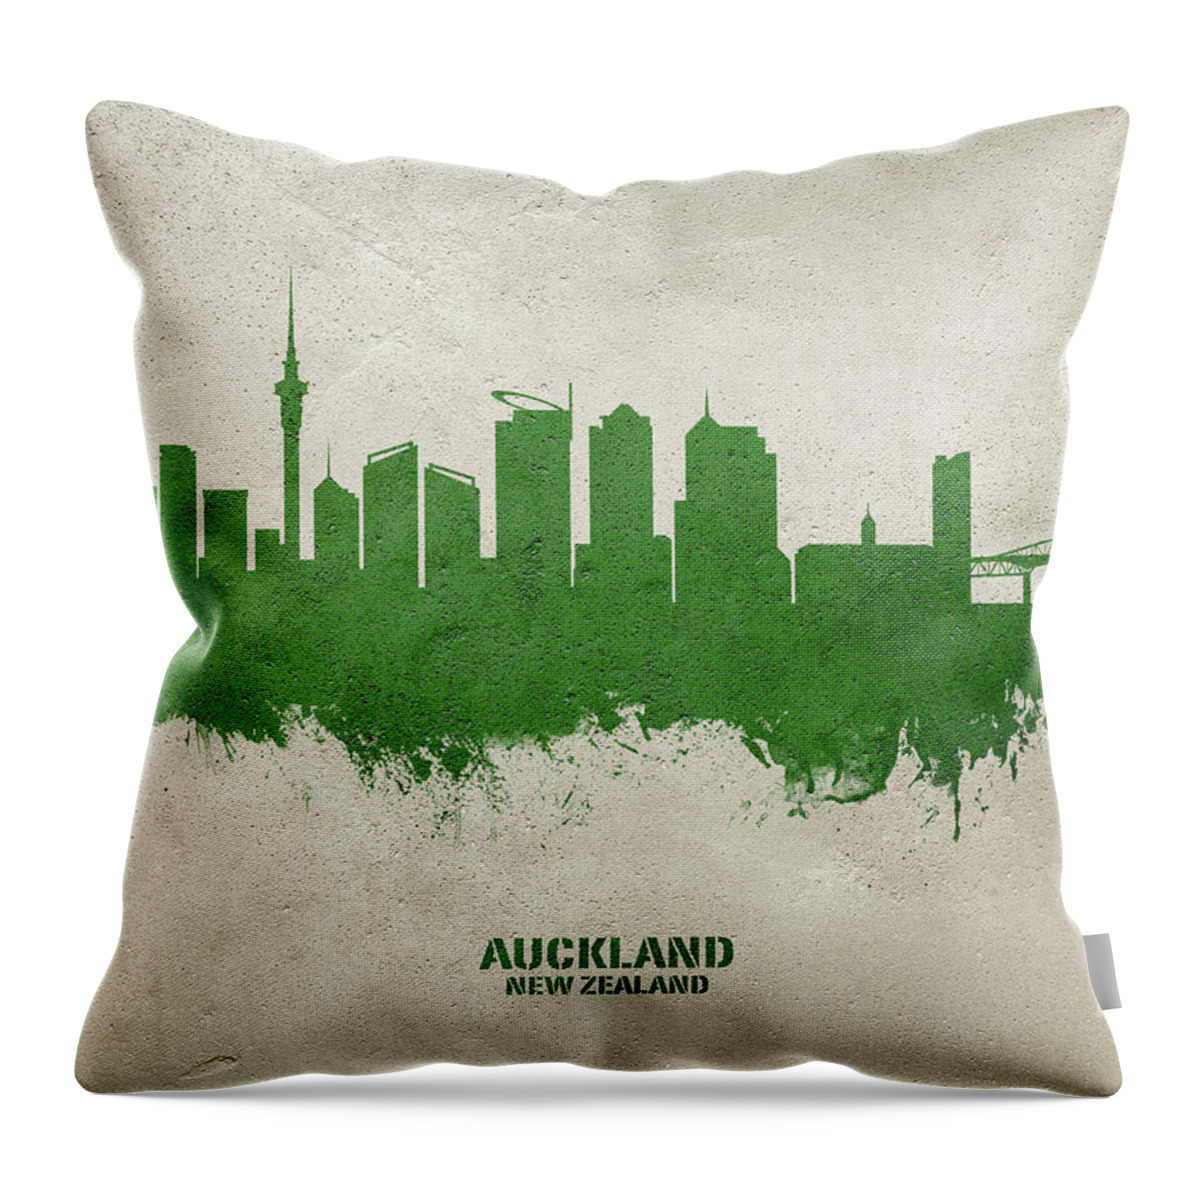 Auckland Throw Pillow featuring the digital art Auckland New Zealand Skyline #40 by Michael Tompsett